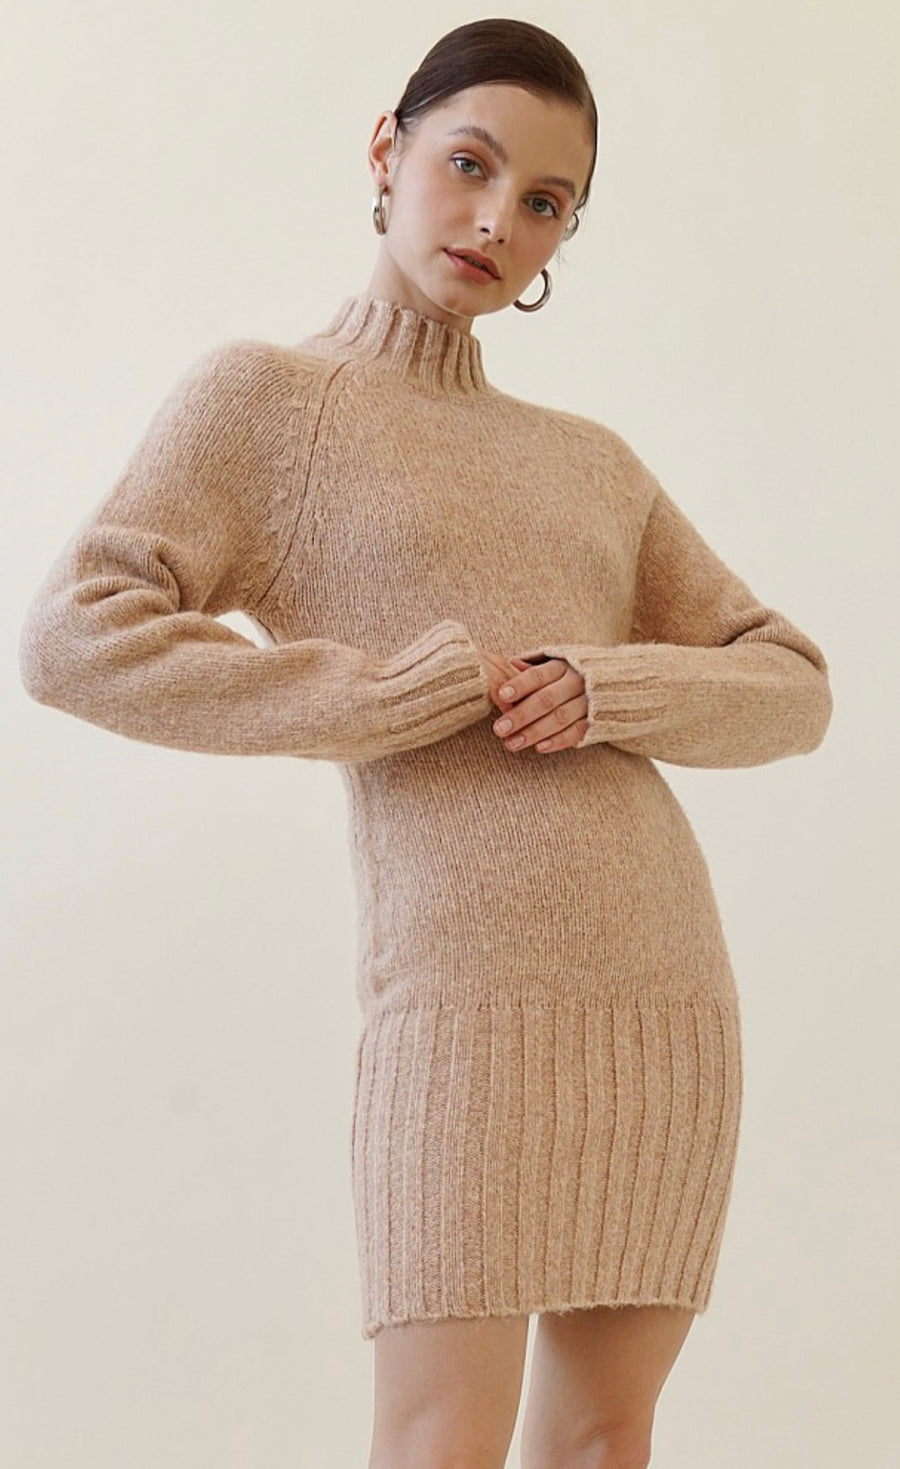 Model is wearing a beige turtle neck sweater dress